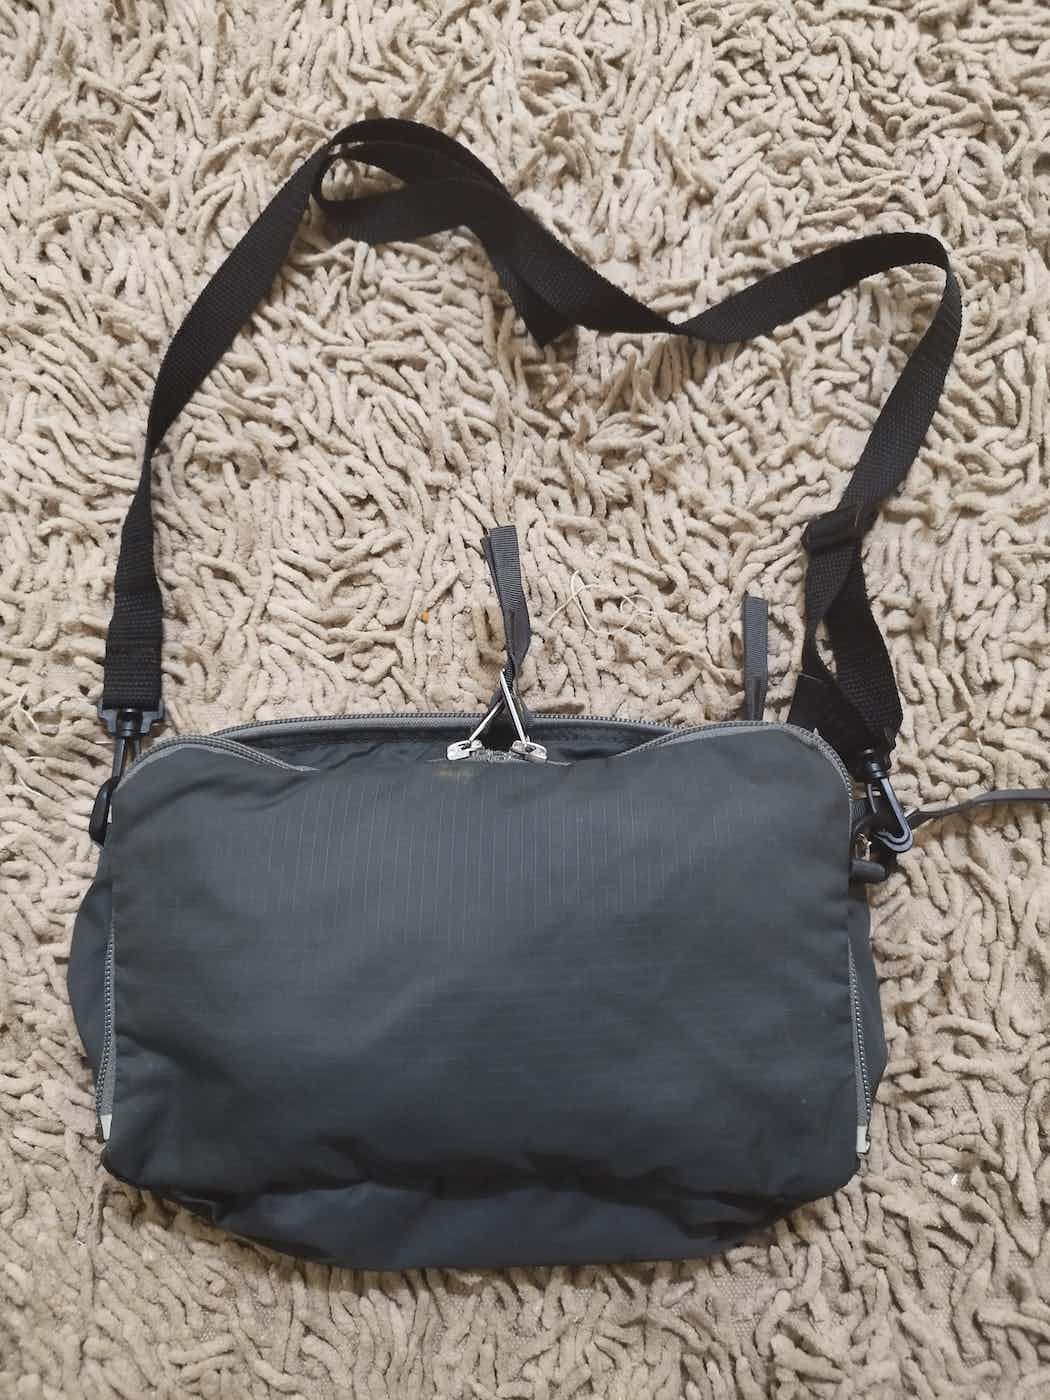 Porter 2 in 1 sling bag / backpack - 4